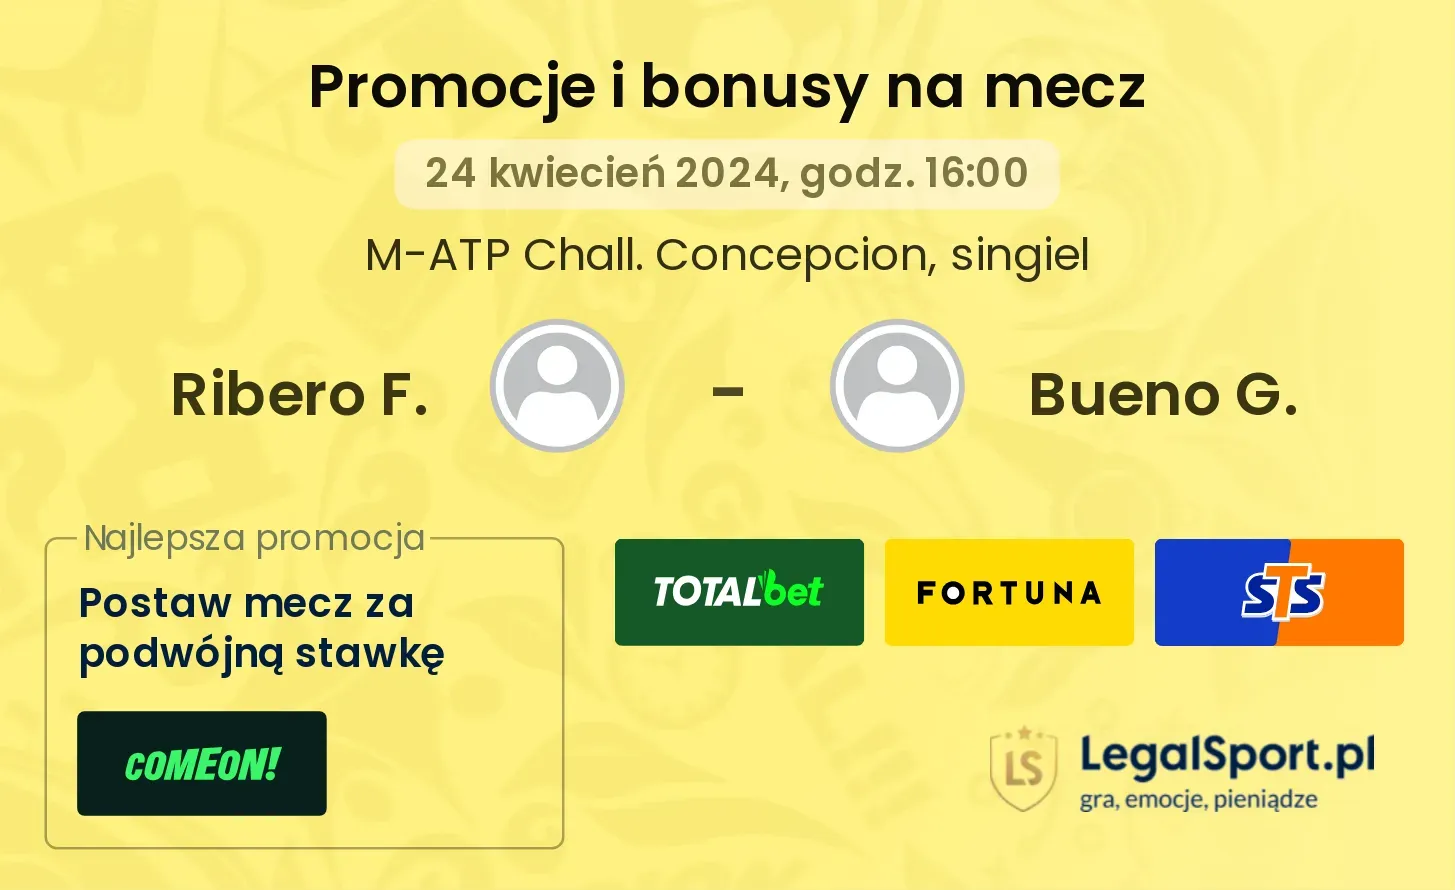 Ribero F. - Bueno G. promocje bonusy na mecz